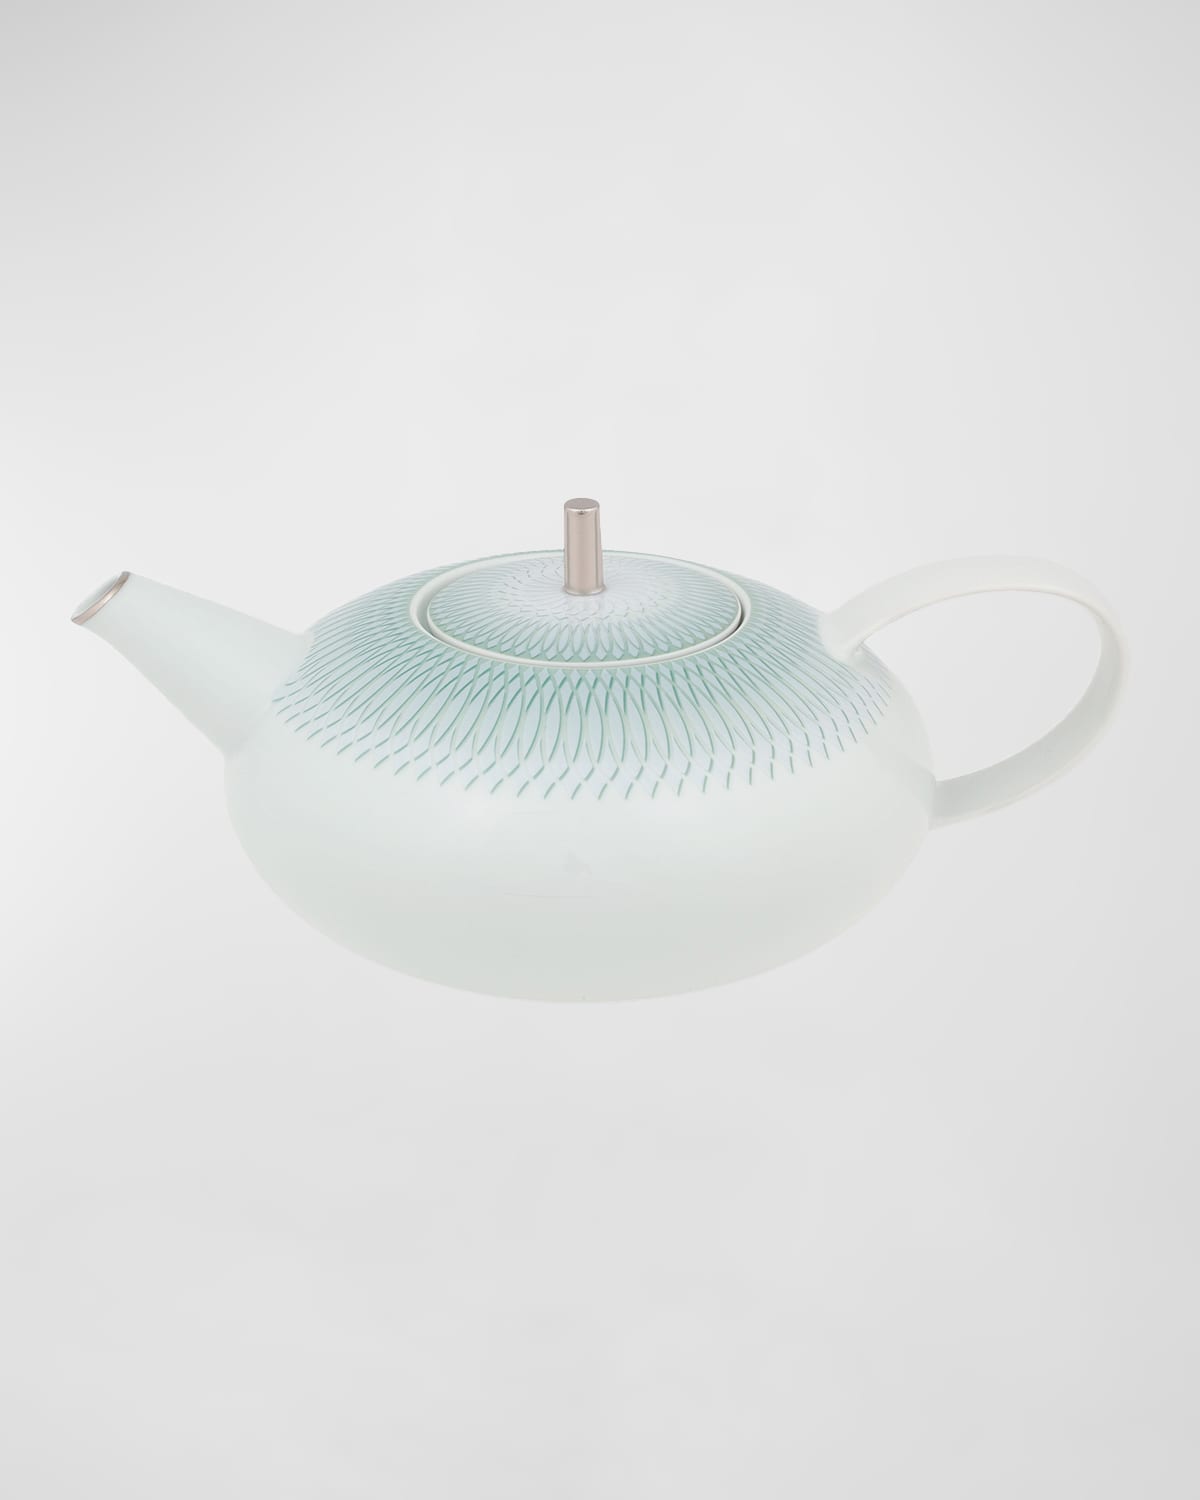 Venezia Teapot